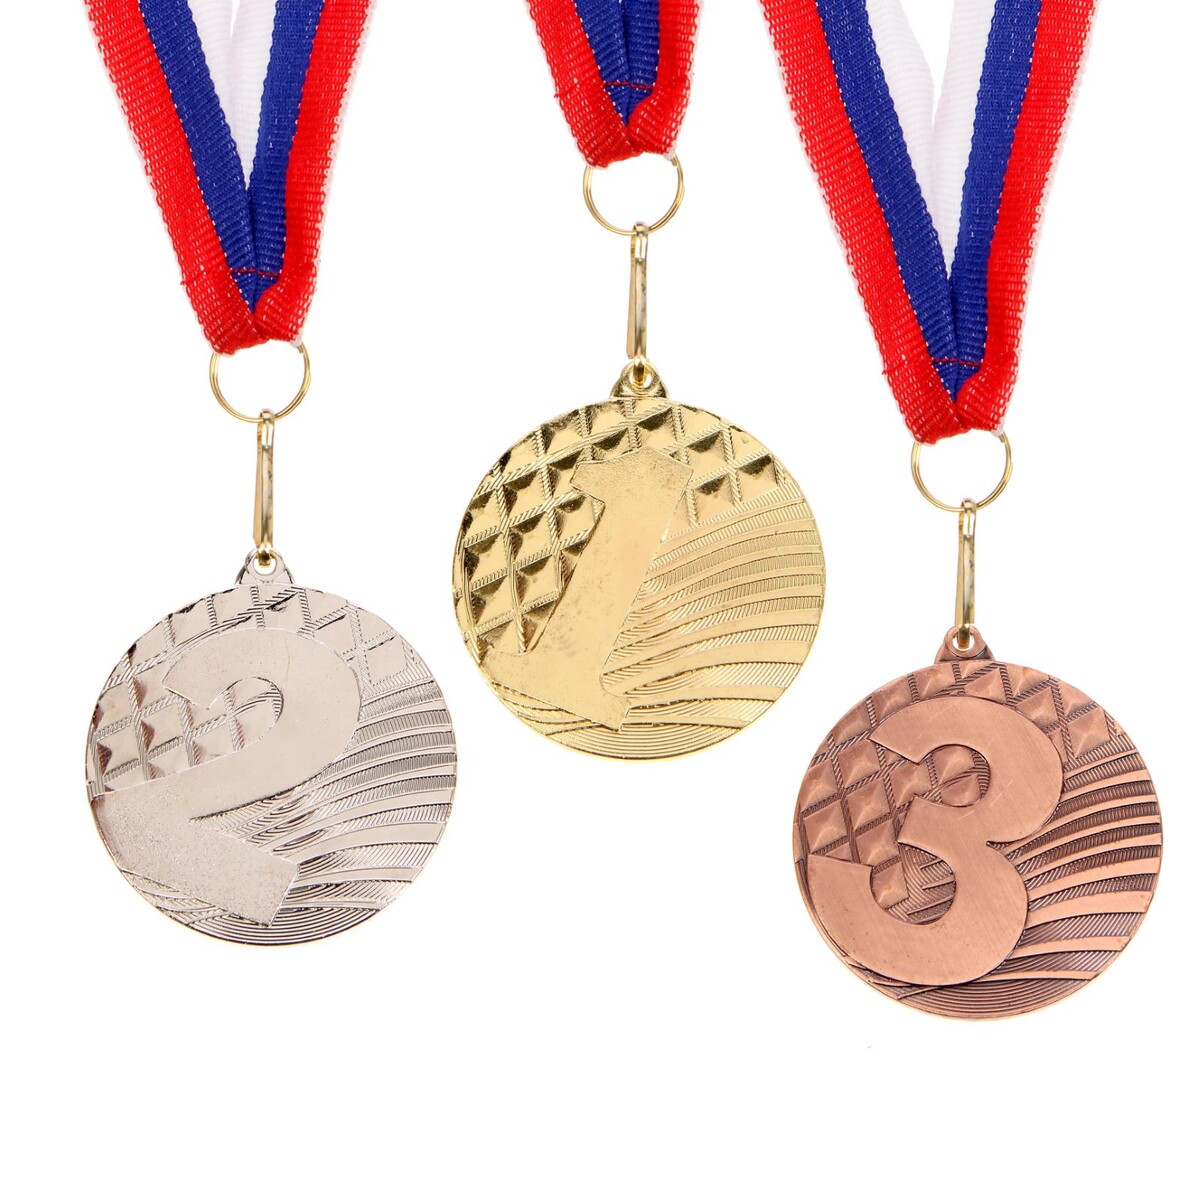 Медаль призовая 048 диам 5 см. 1 место. цвет зол. с лентой 3 ряд 17 место